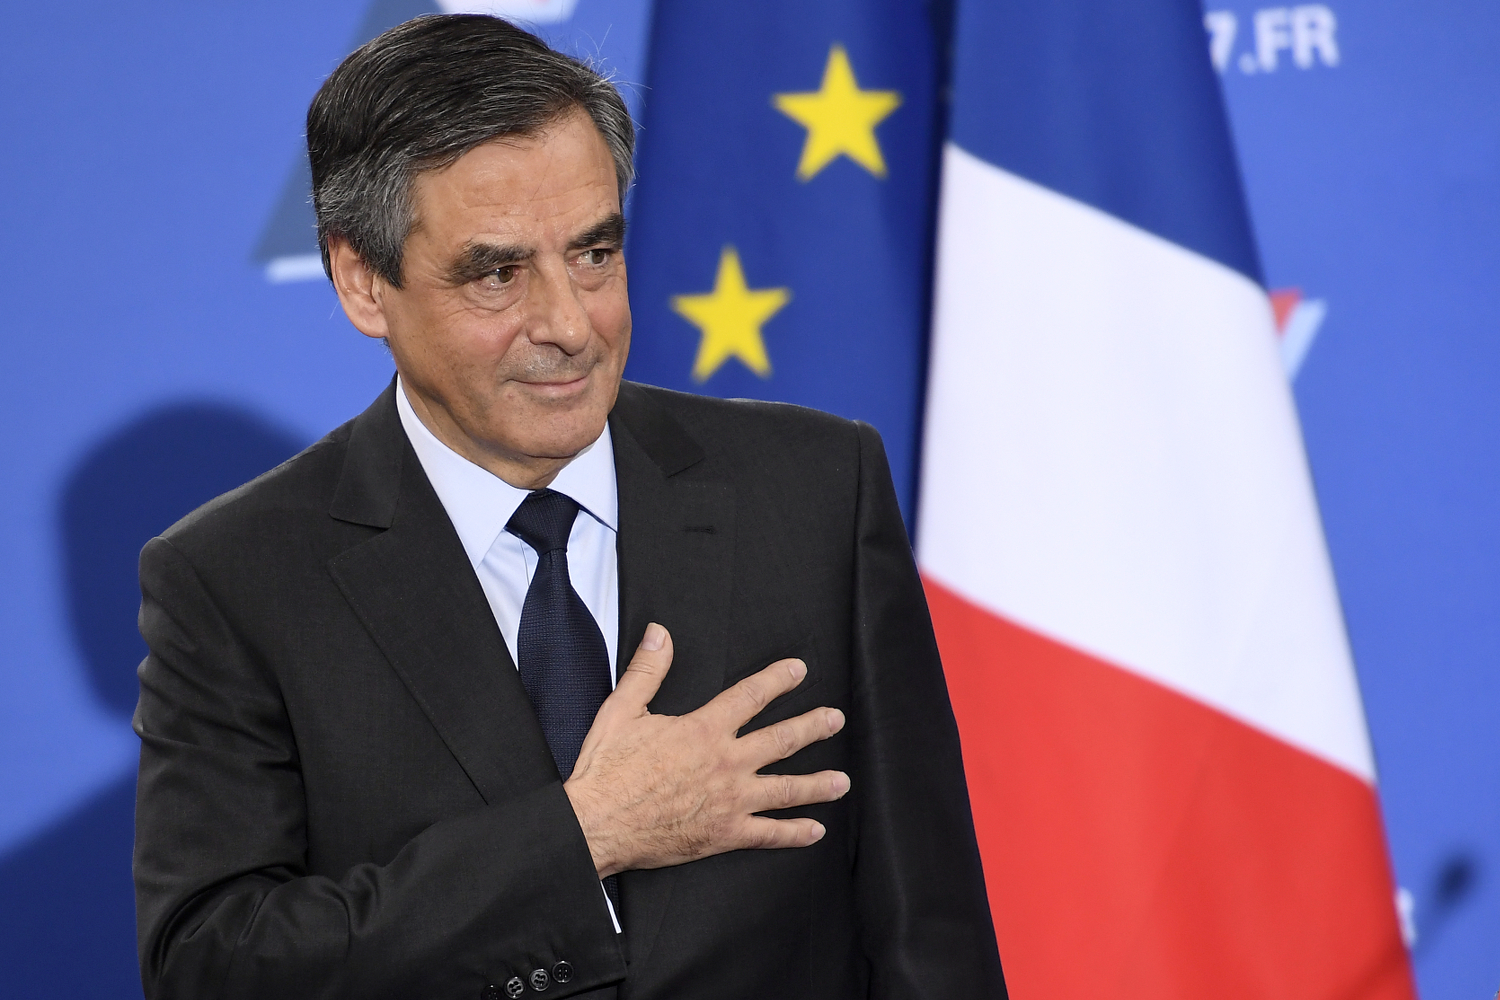 La derecha francesa elige al conservador Fillon para reconquistar el Elíseo